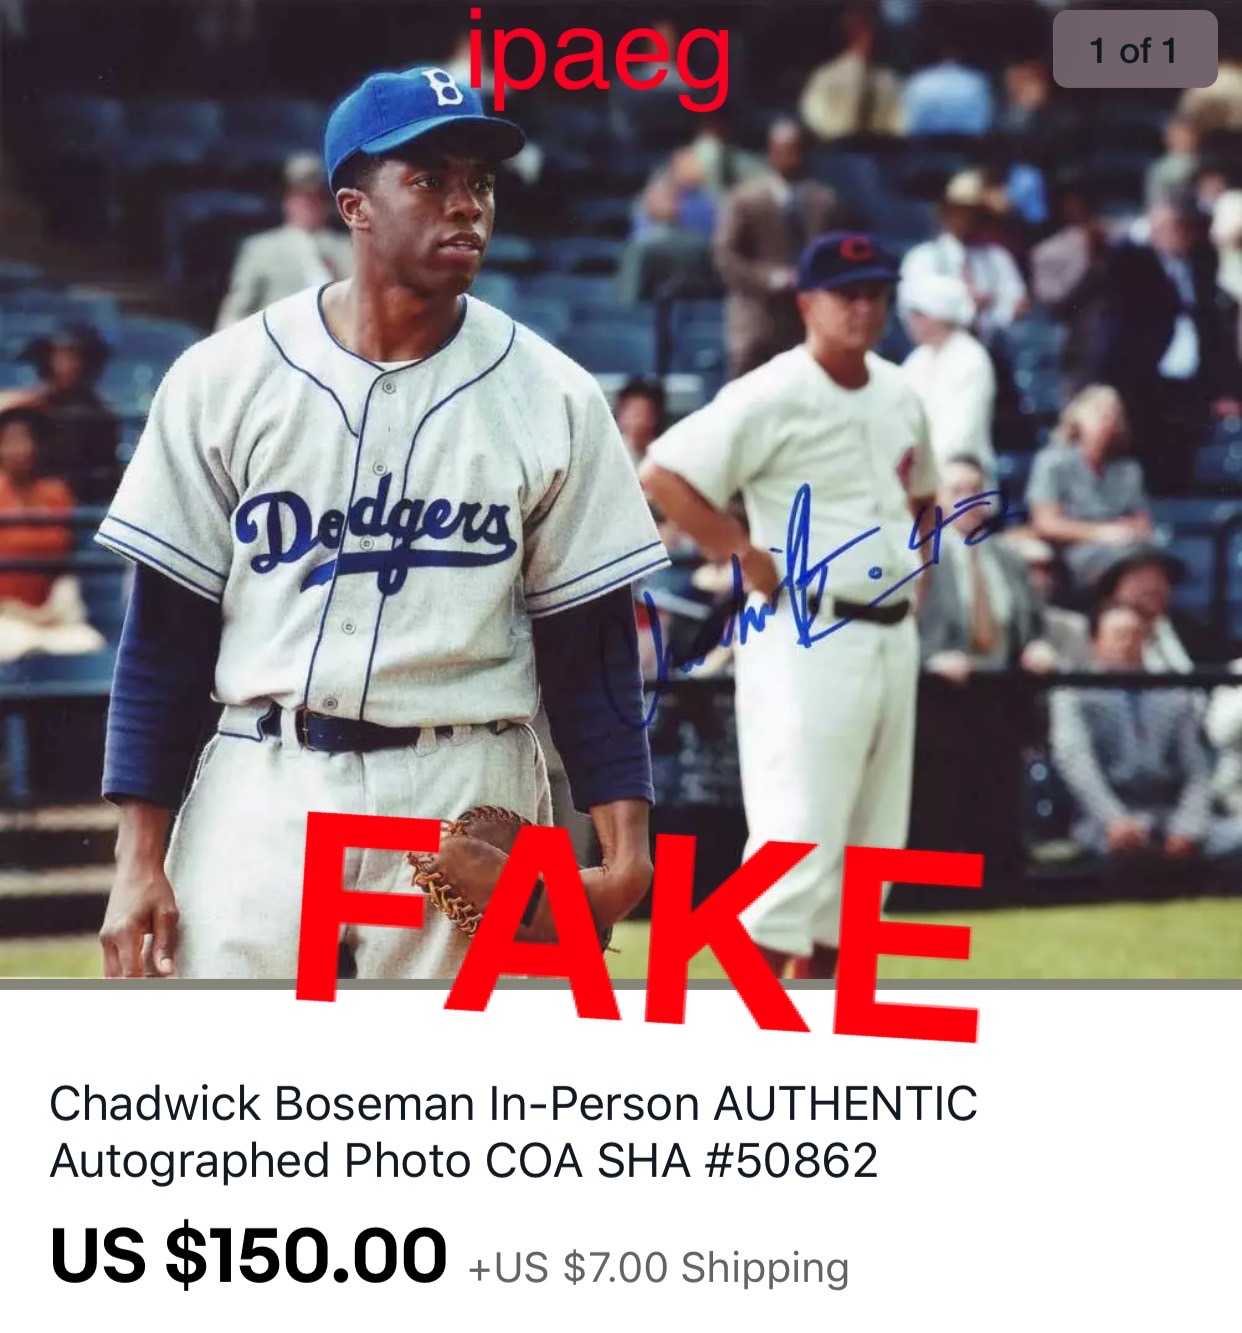 Chadwick Boseman forgery 